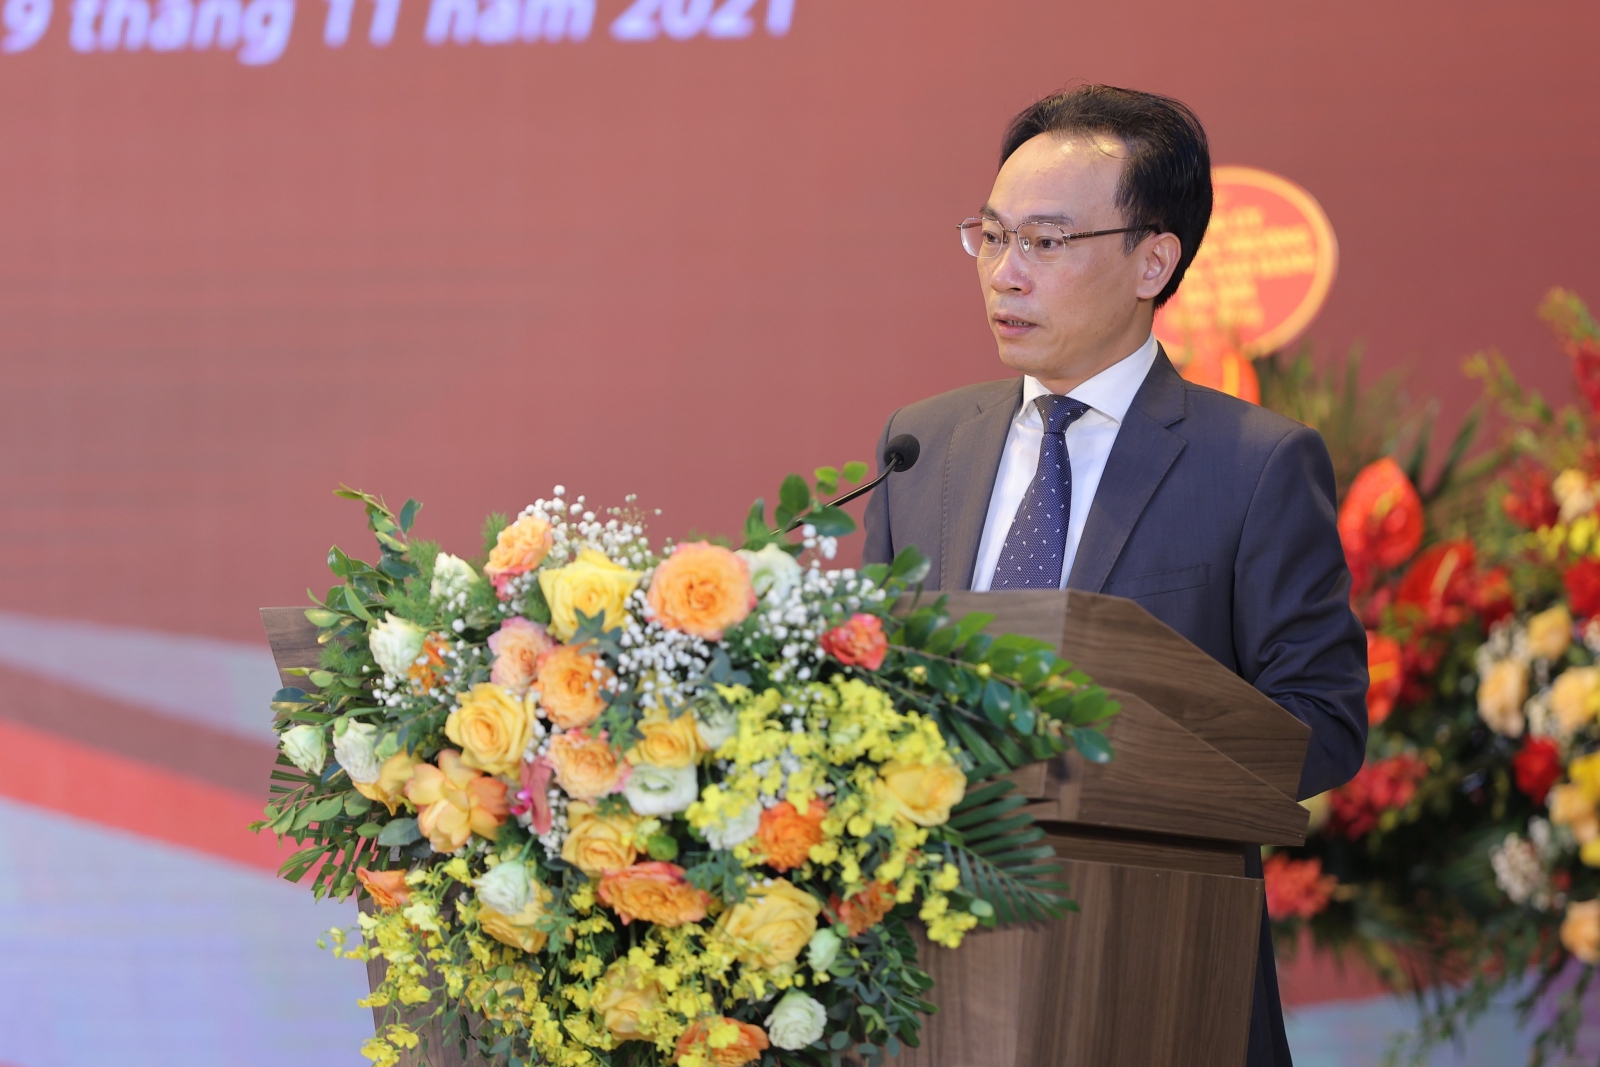 Trường Đại học Xây dựng Hà Nội nhận Cờ thi đua của Chính phủ - Ảnh minh hoạ 2